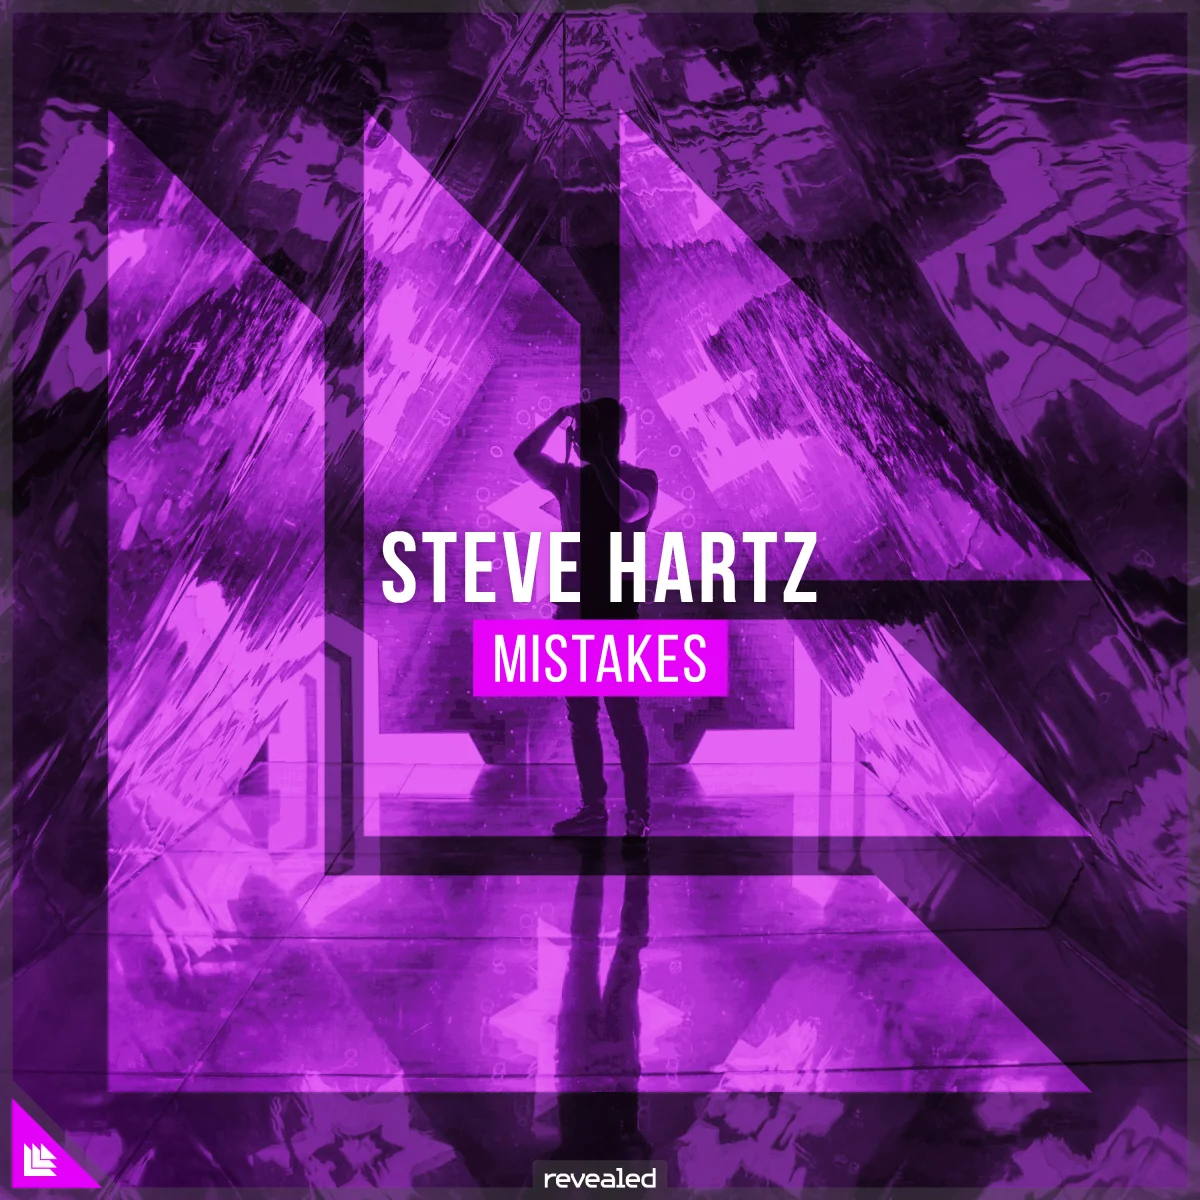 Mistakes - Steve Hartz⁠ 